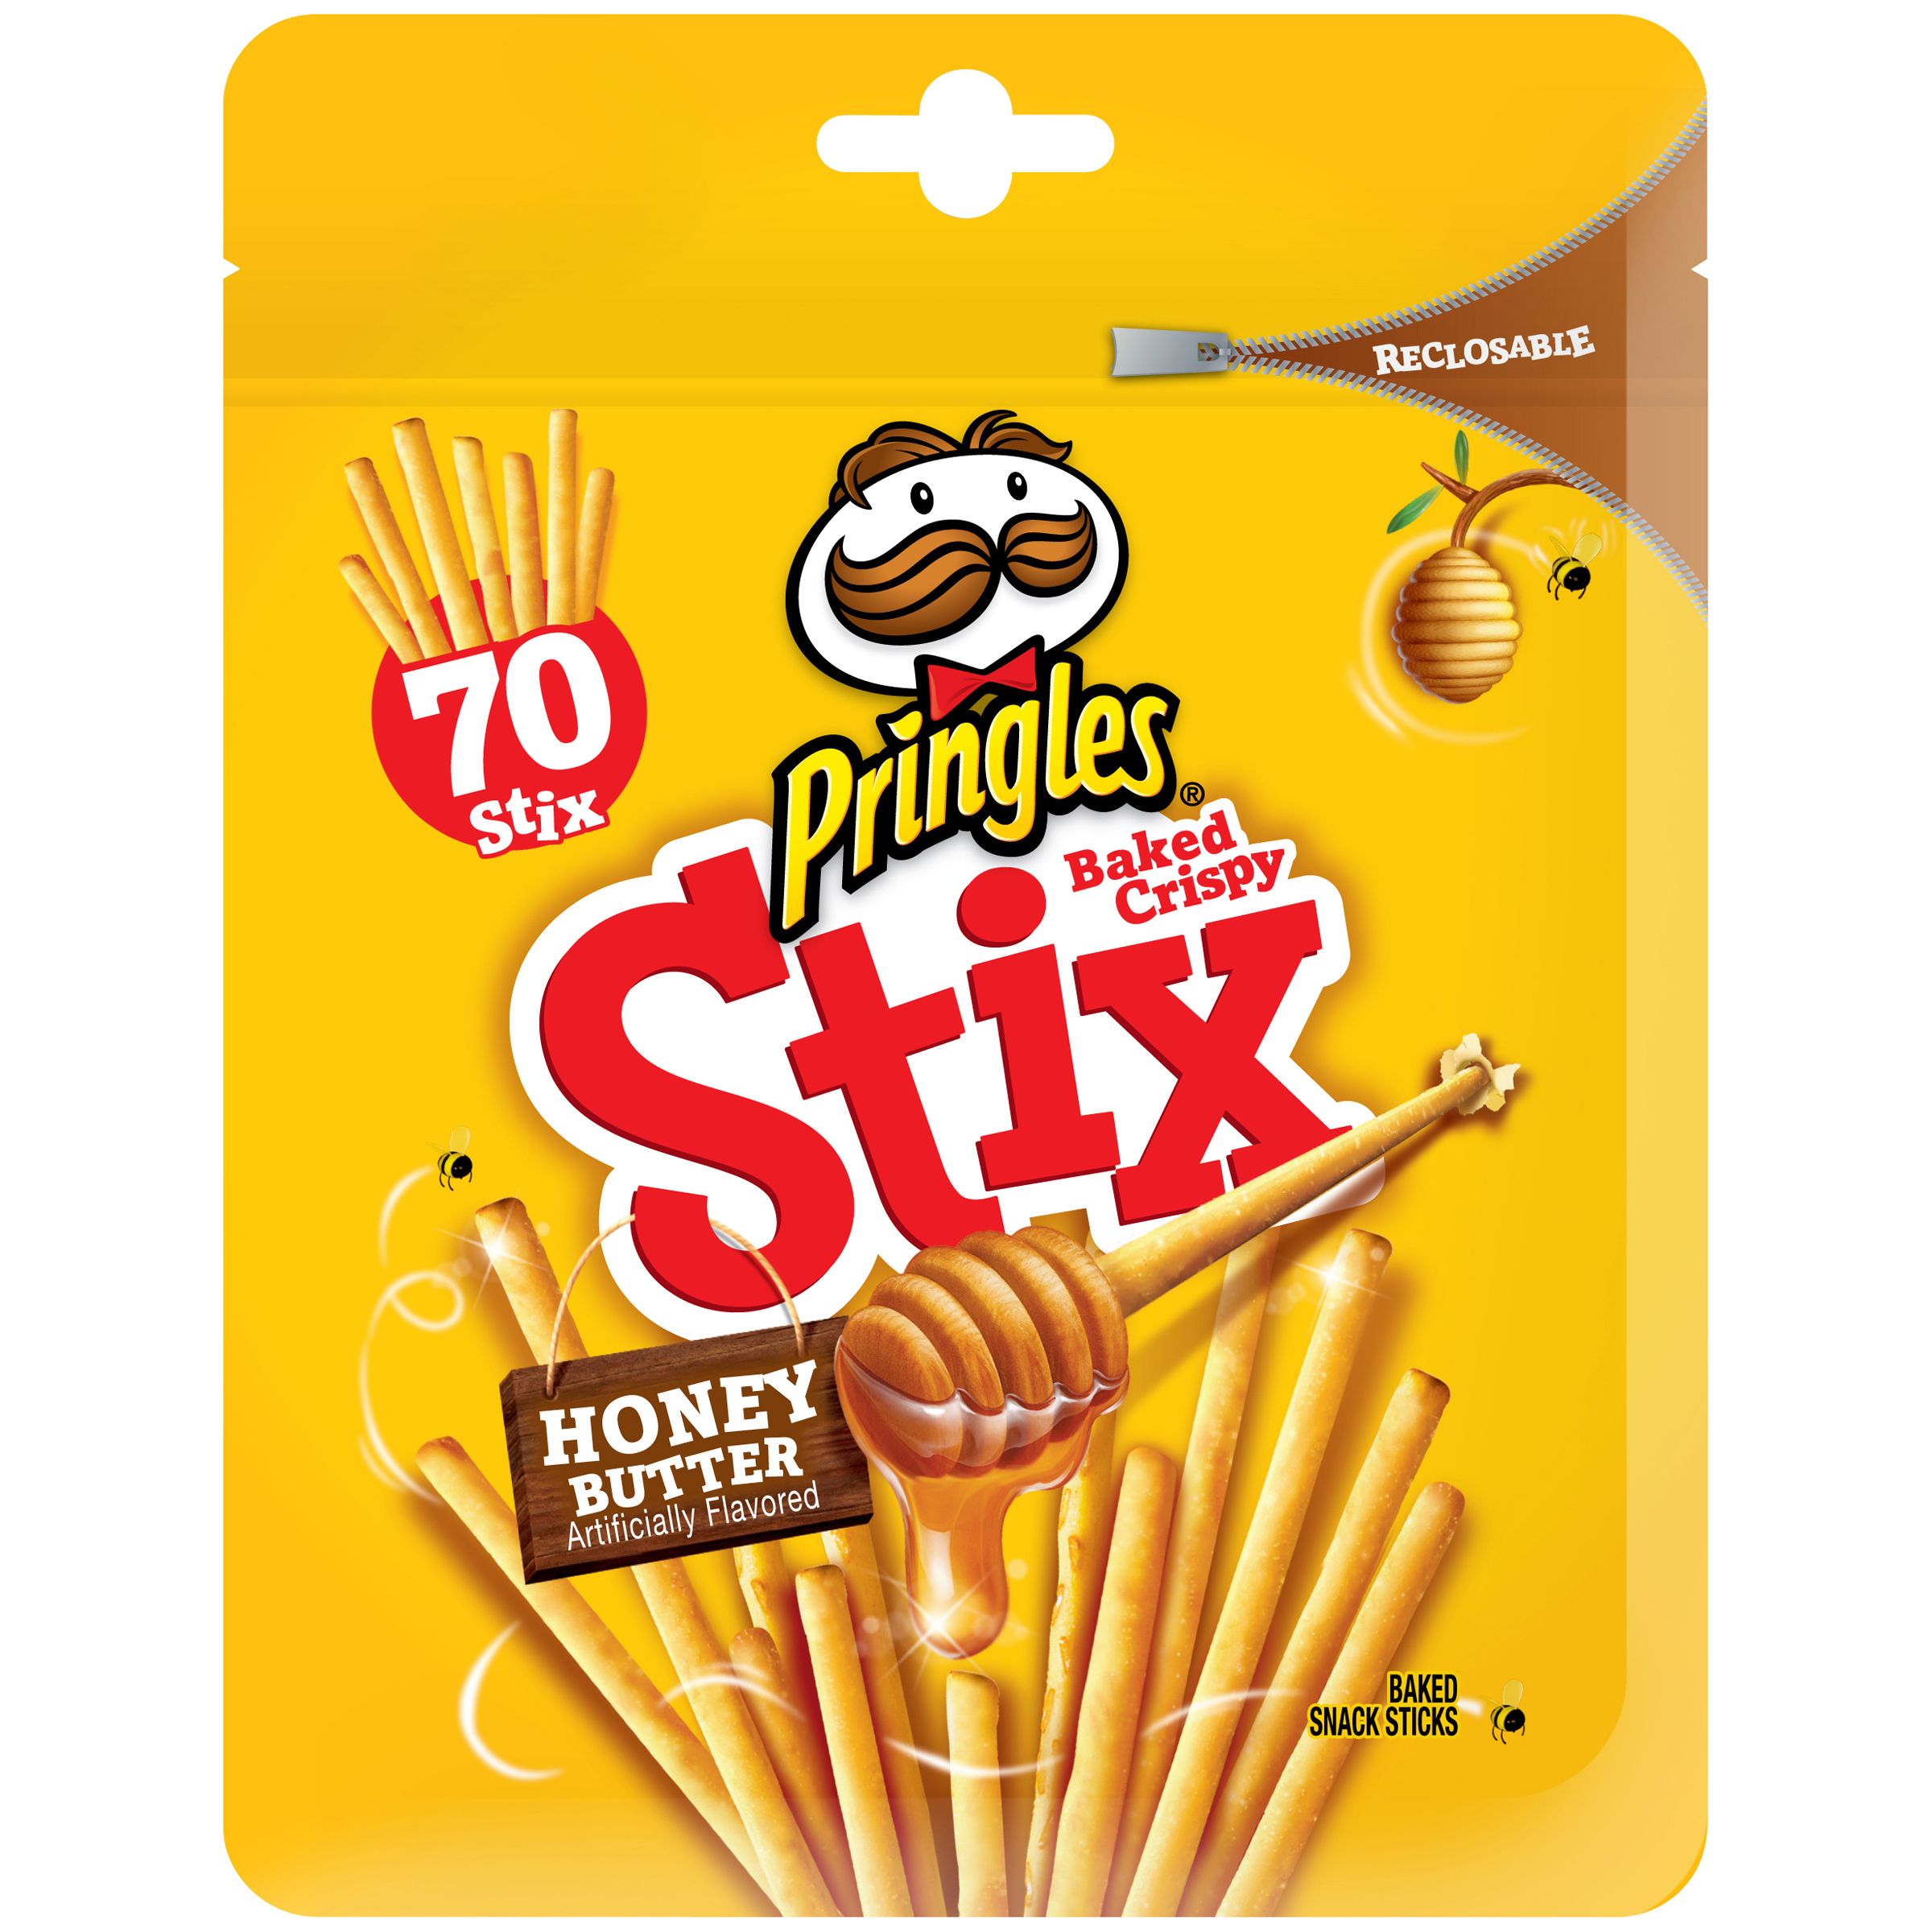 Pringles Baked Crispy Stix Honey Butter, 70 stix